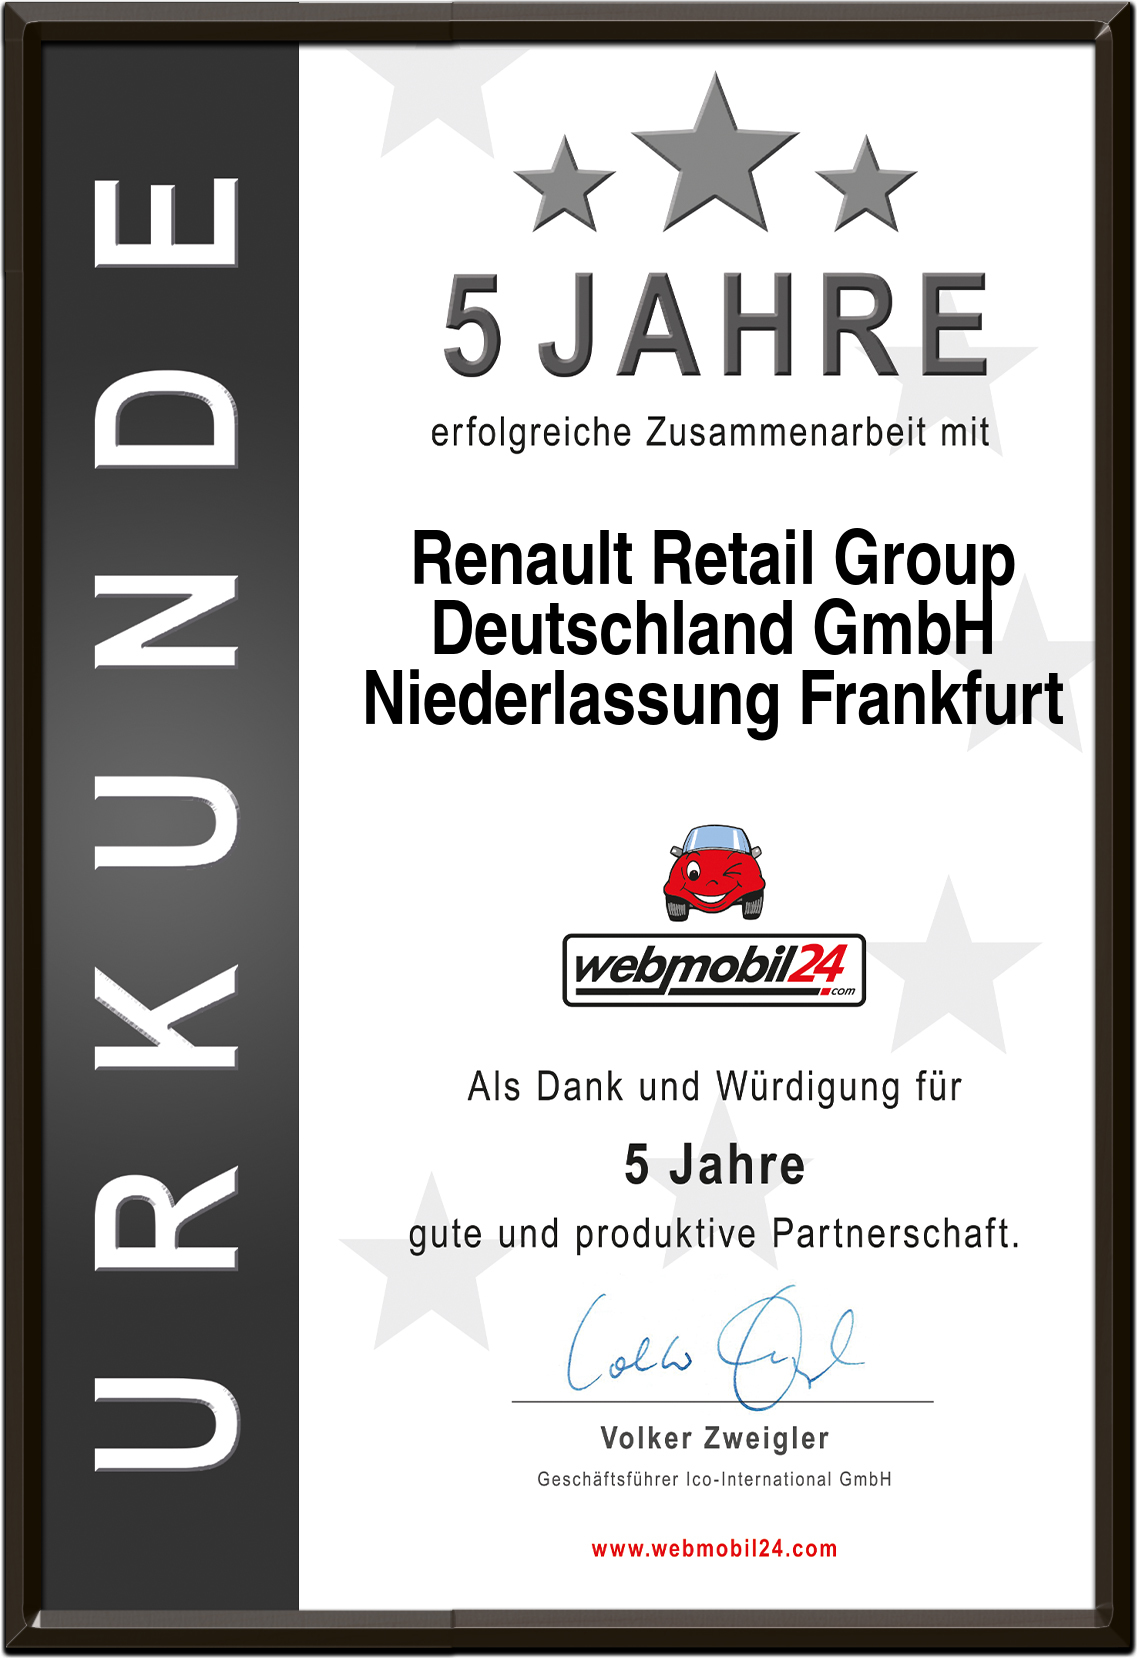 Renault Retail GroupDeutschland GmbHNiederlassung Frankfurt